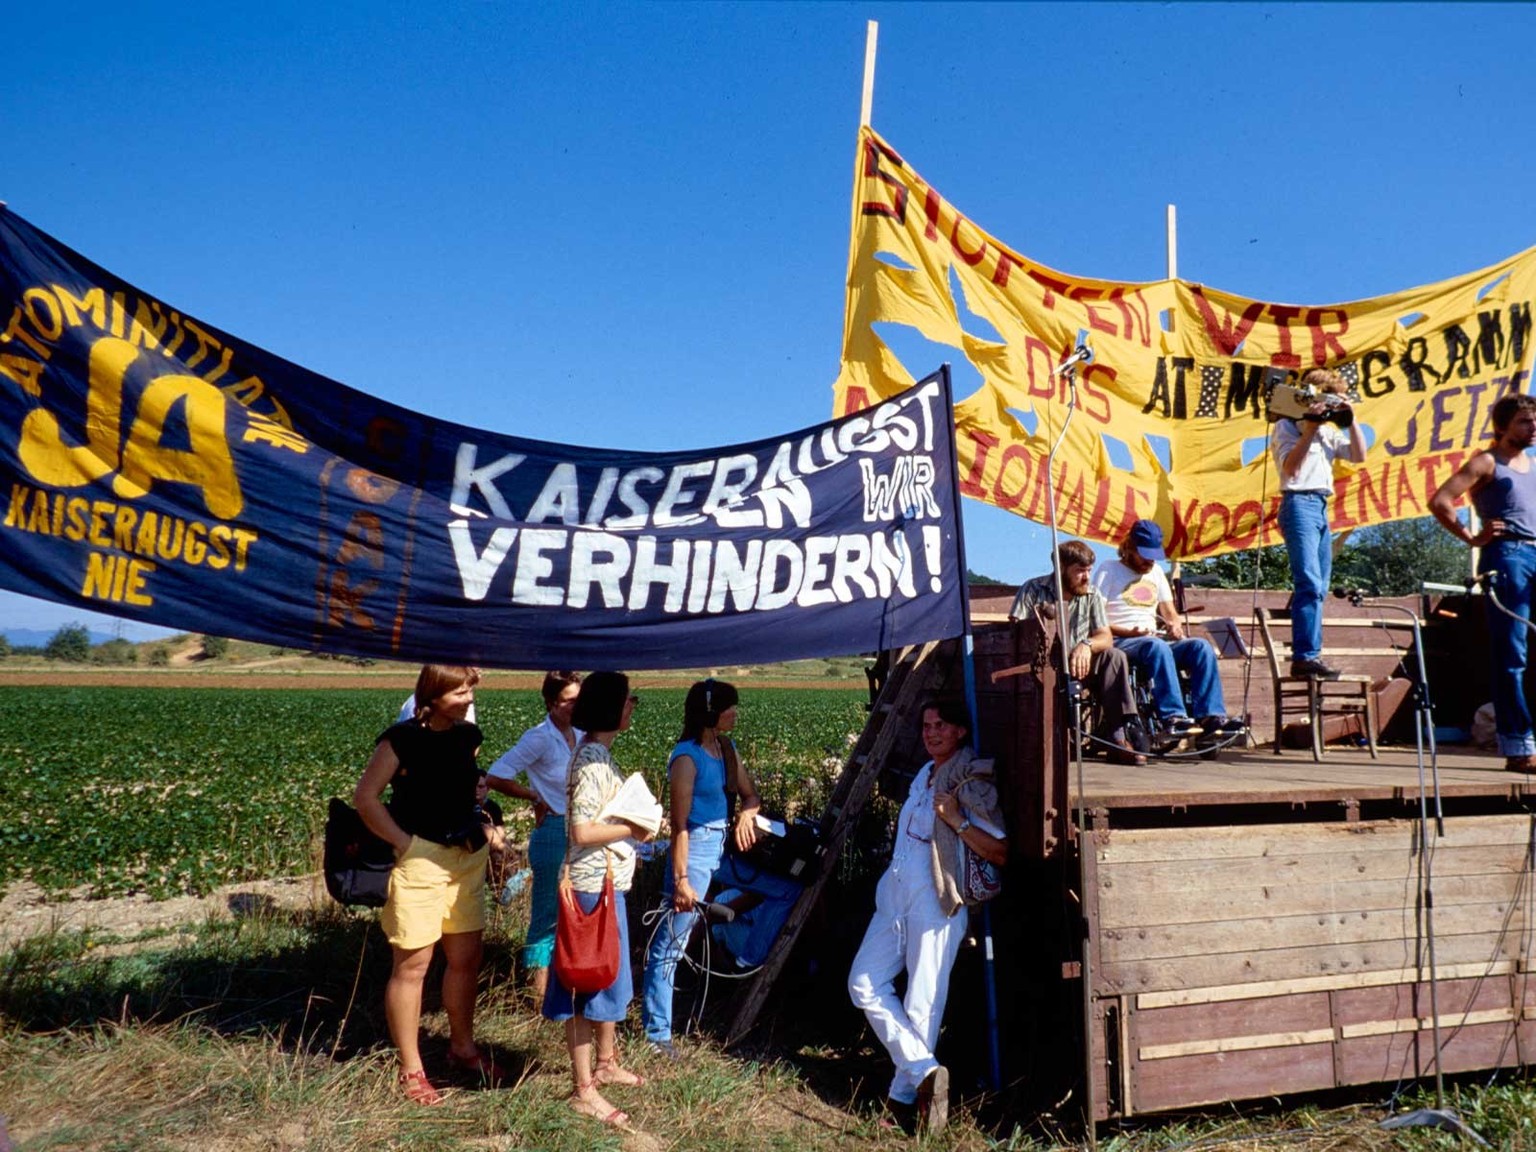 Demonstrierende mit Transparenten gegen den Bau des Atomkraftwerks in Kaiseraugst, September 1984.
https://permalink.nationalmuseum.ch/101325202